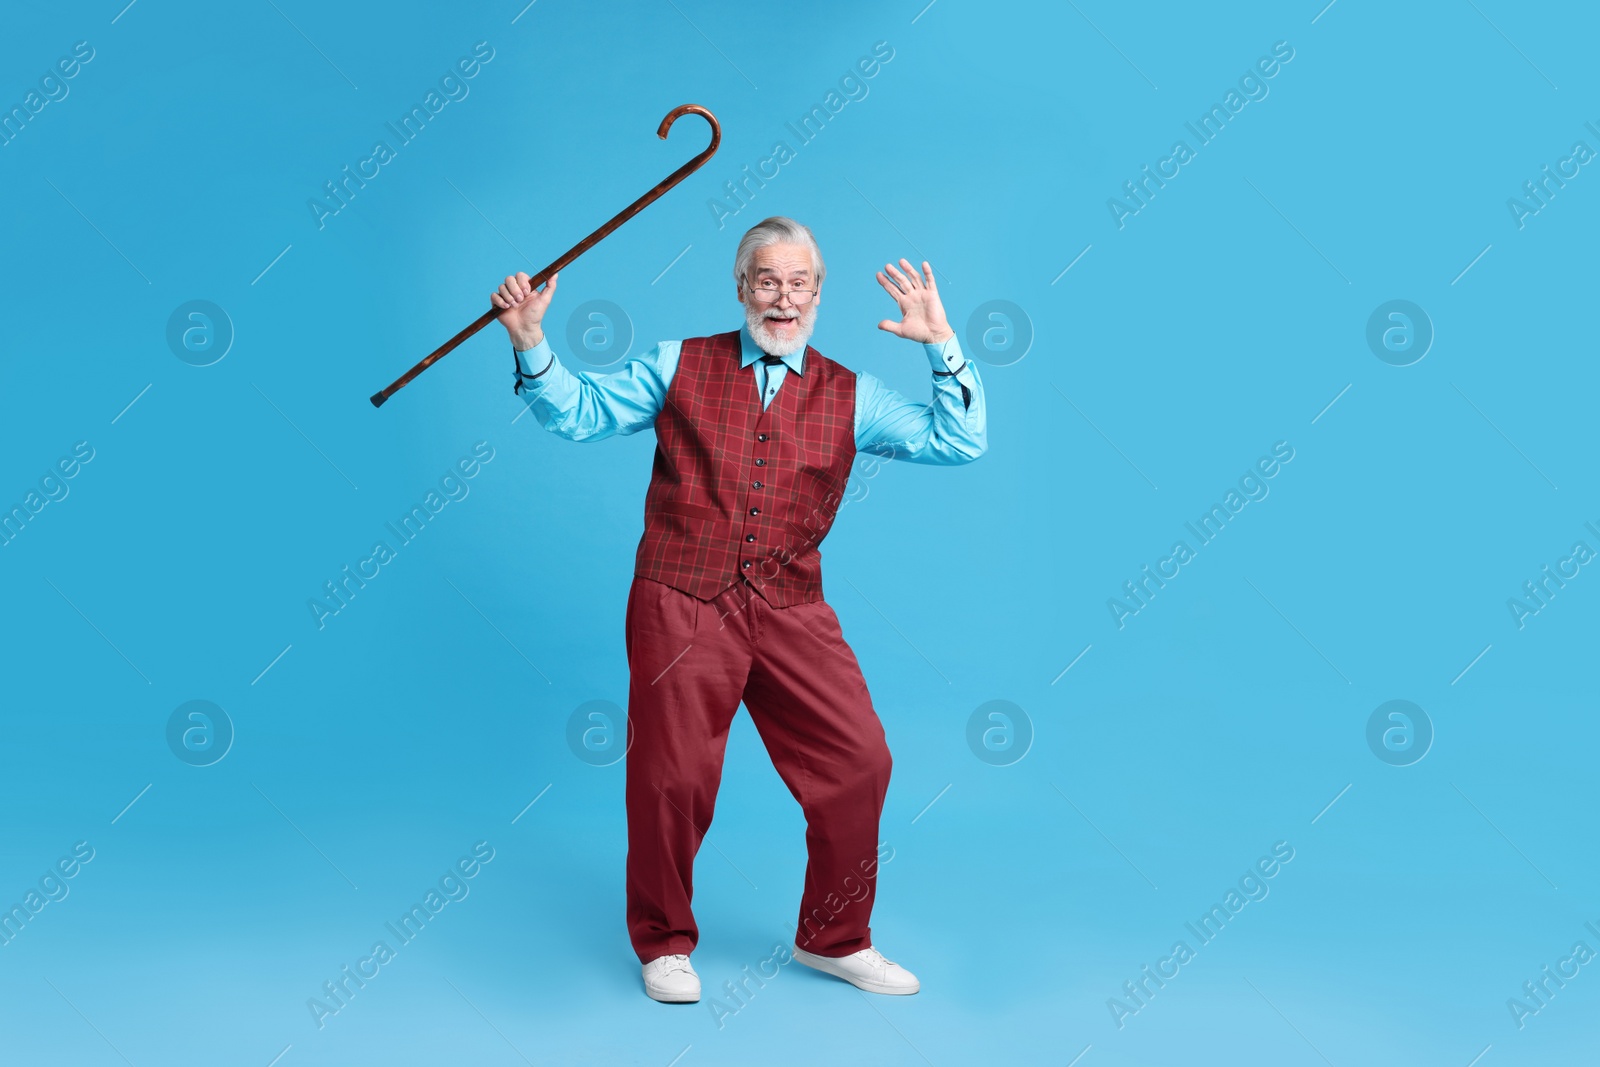 Photo of Emotional senior man with walking cane on light blue background